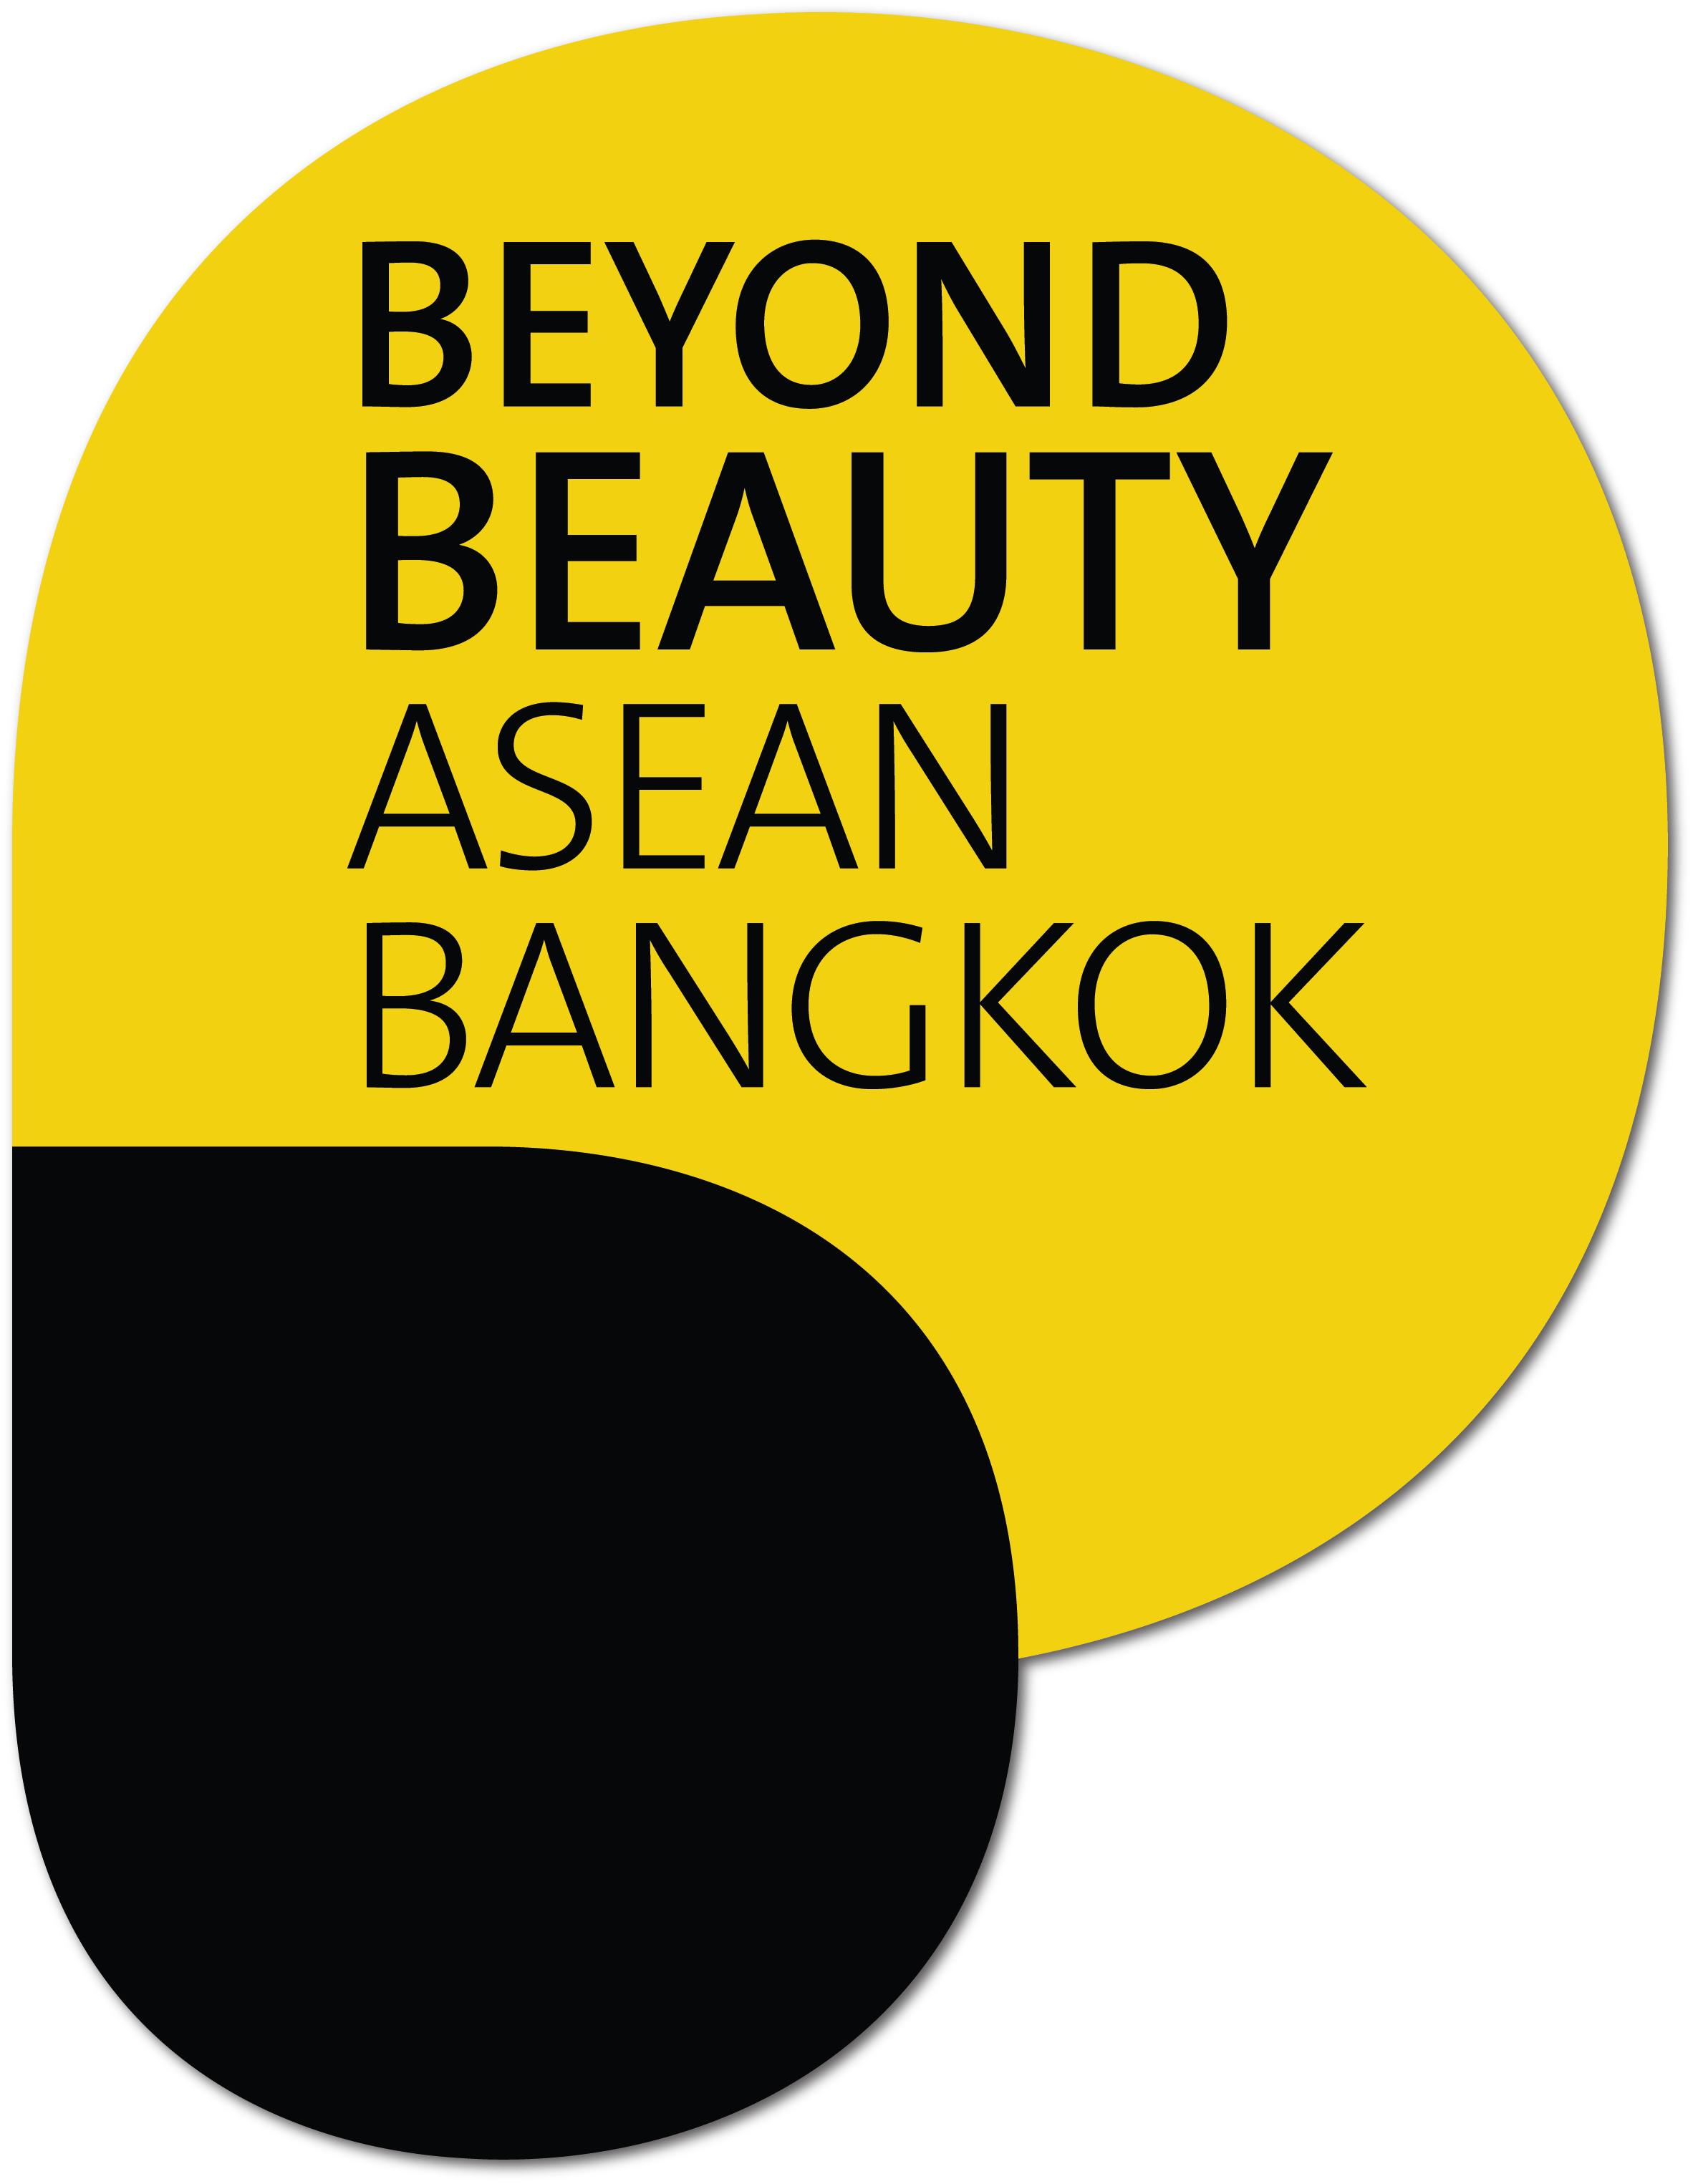 La 5ème édition de Beyond Beauty Asean Bangkok est de retour avec un tout nouveau concept